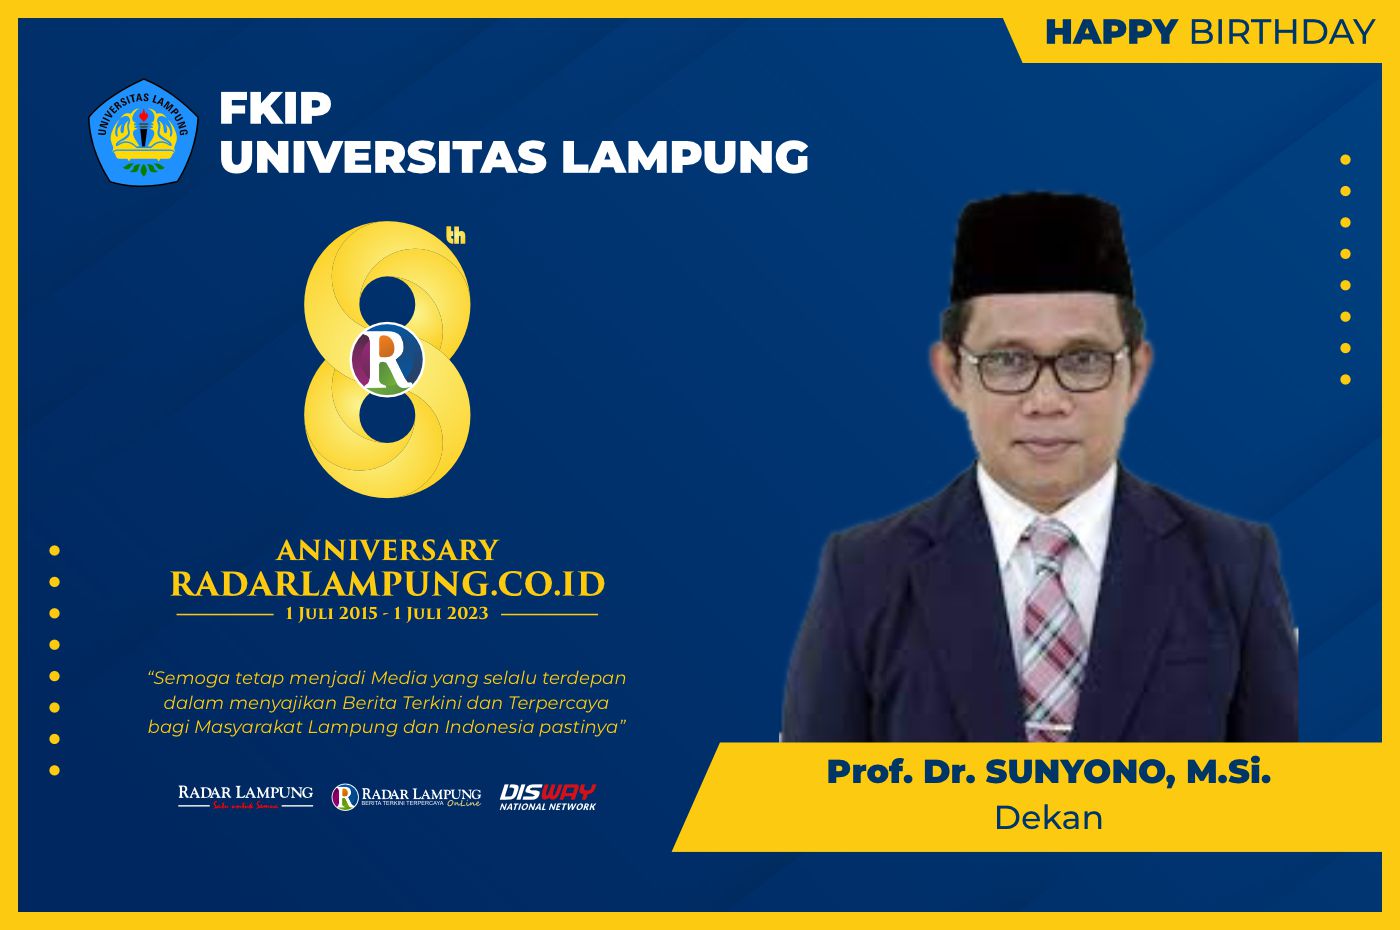 FKIP Universitas Lampung: Selamat Ulang Tahun Radar Lampung Online ke-8